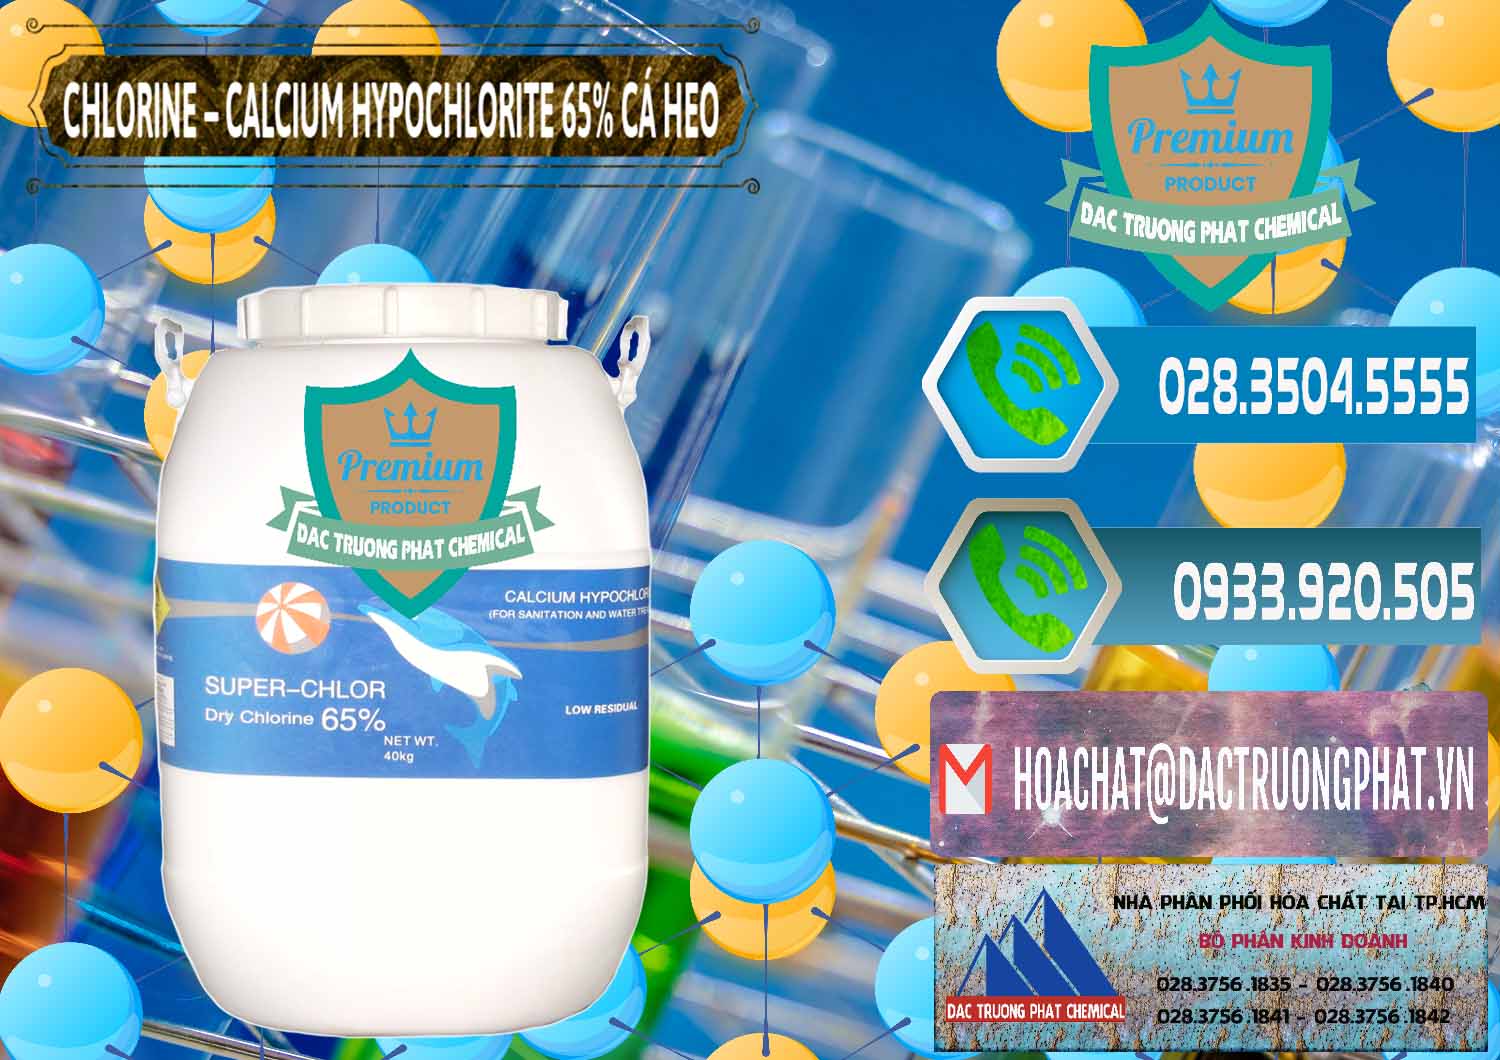 Nơi chuyên bán _ cung ứng Clorin - Chlorine Cá Heo 65% Trung Quốc China - 0053 - Nơi chuyên cung ứng - phân phối hóa chất tại TP.HCM - congtyhoachat.net